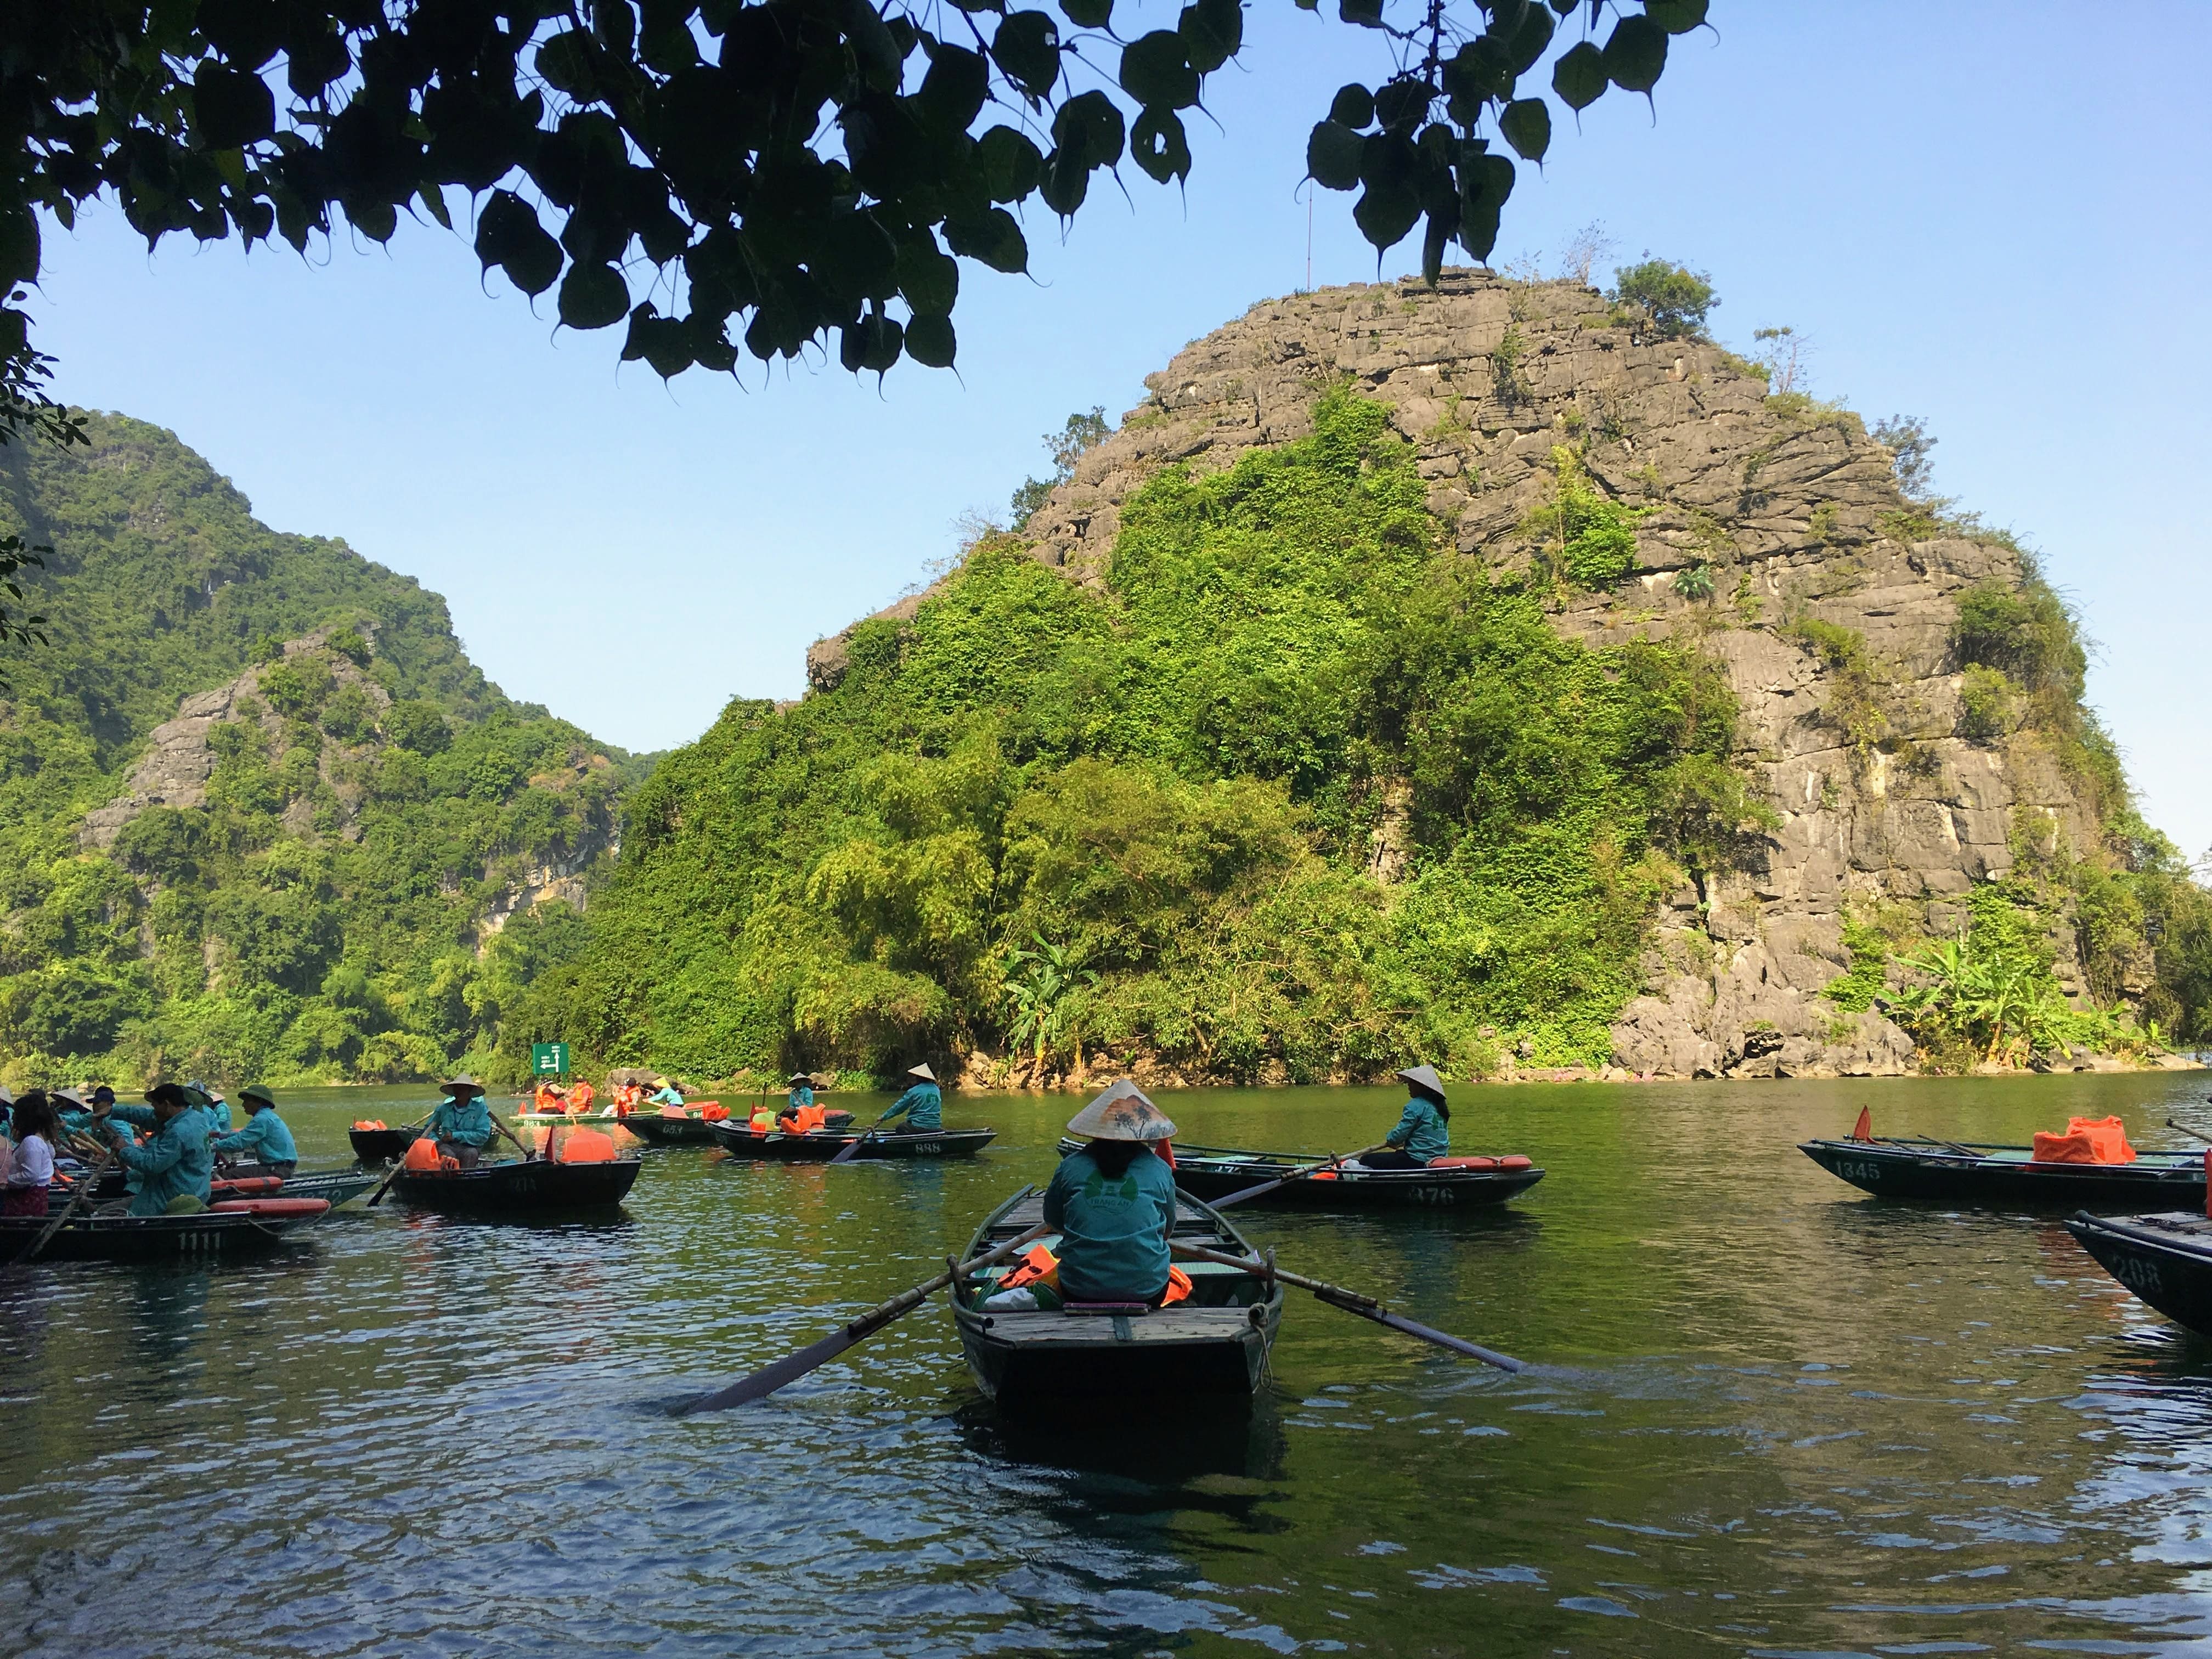 Du lịch Tràng An Ninh Bình: một ngày trên thuyền ngắm nhìn thiên nhiên kỳ vỹ